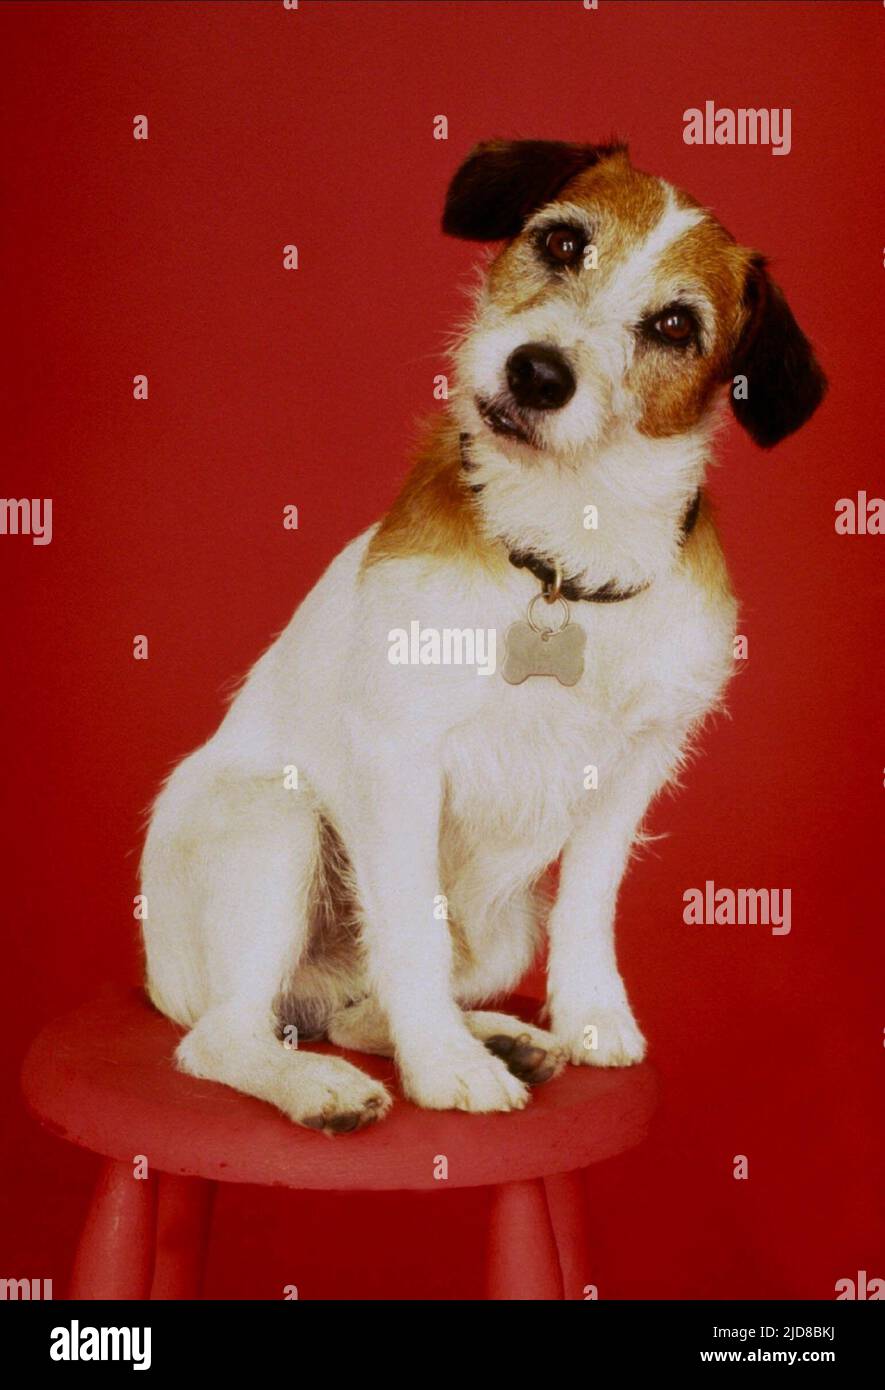 Eddie the dog -Fotos und -Bildmaterial in hoher Auflösung – Alamy